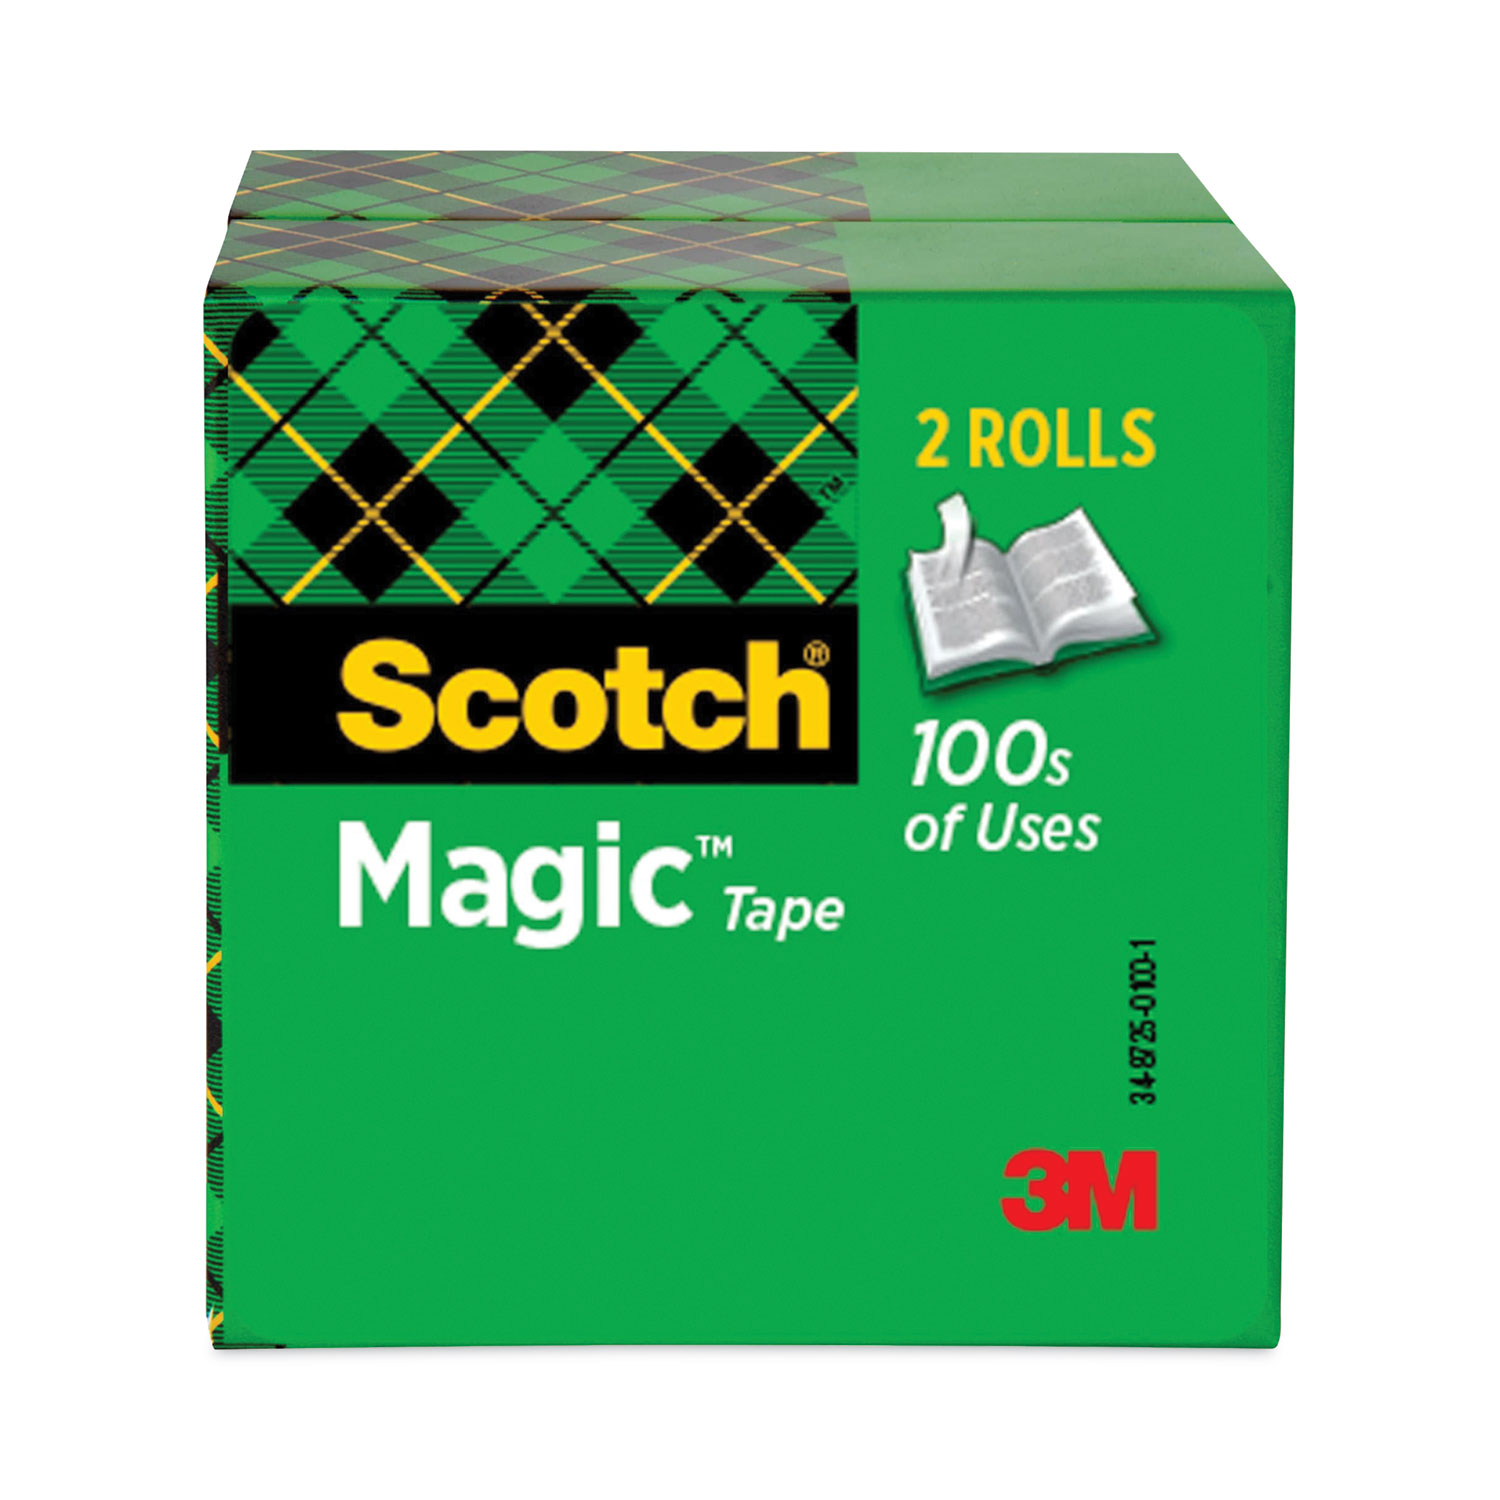 Scotch Magic Tape Dispenser Roll